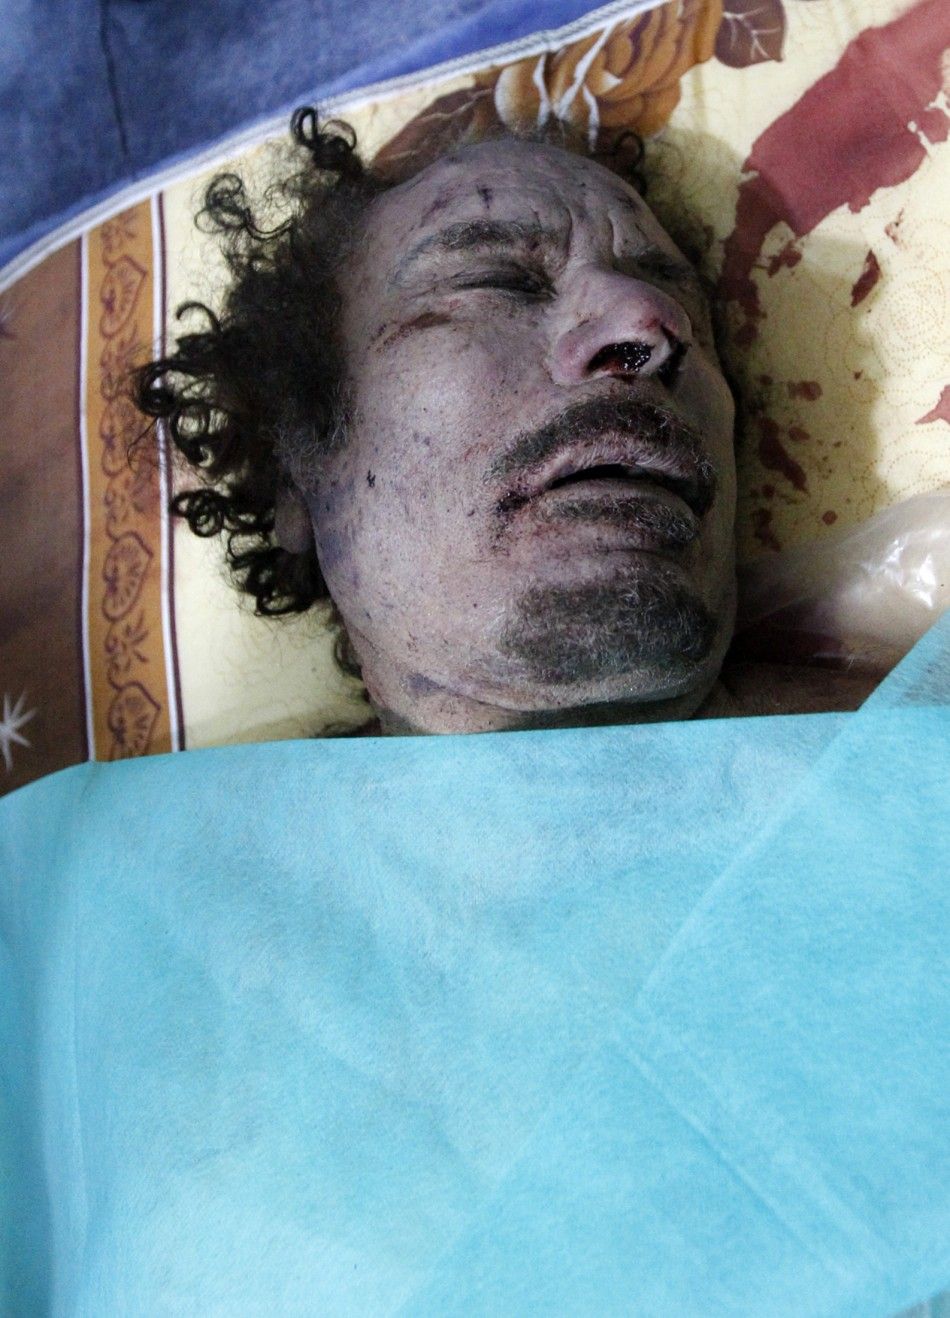 177108-muammar-gaddafi-killed-dead-body-photos-released.jpg